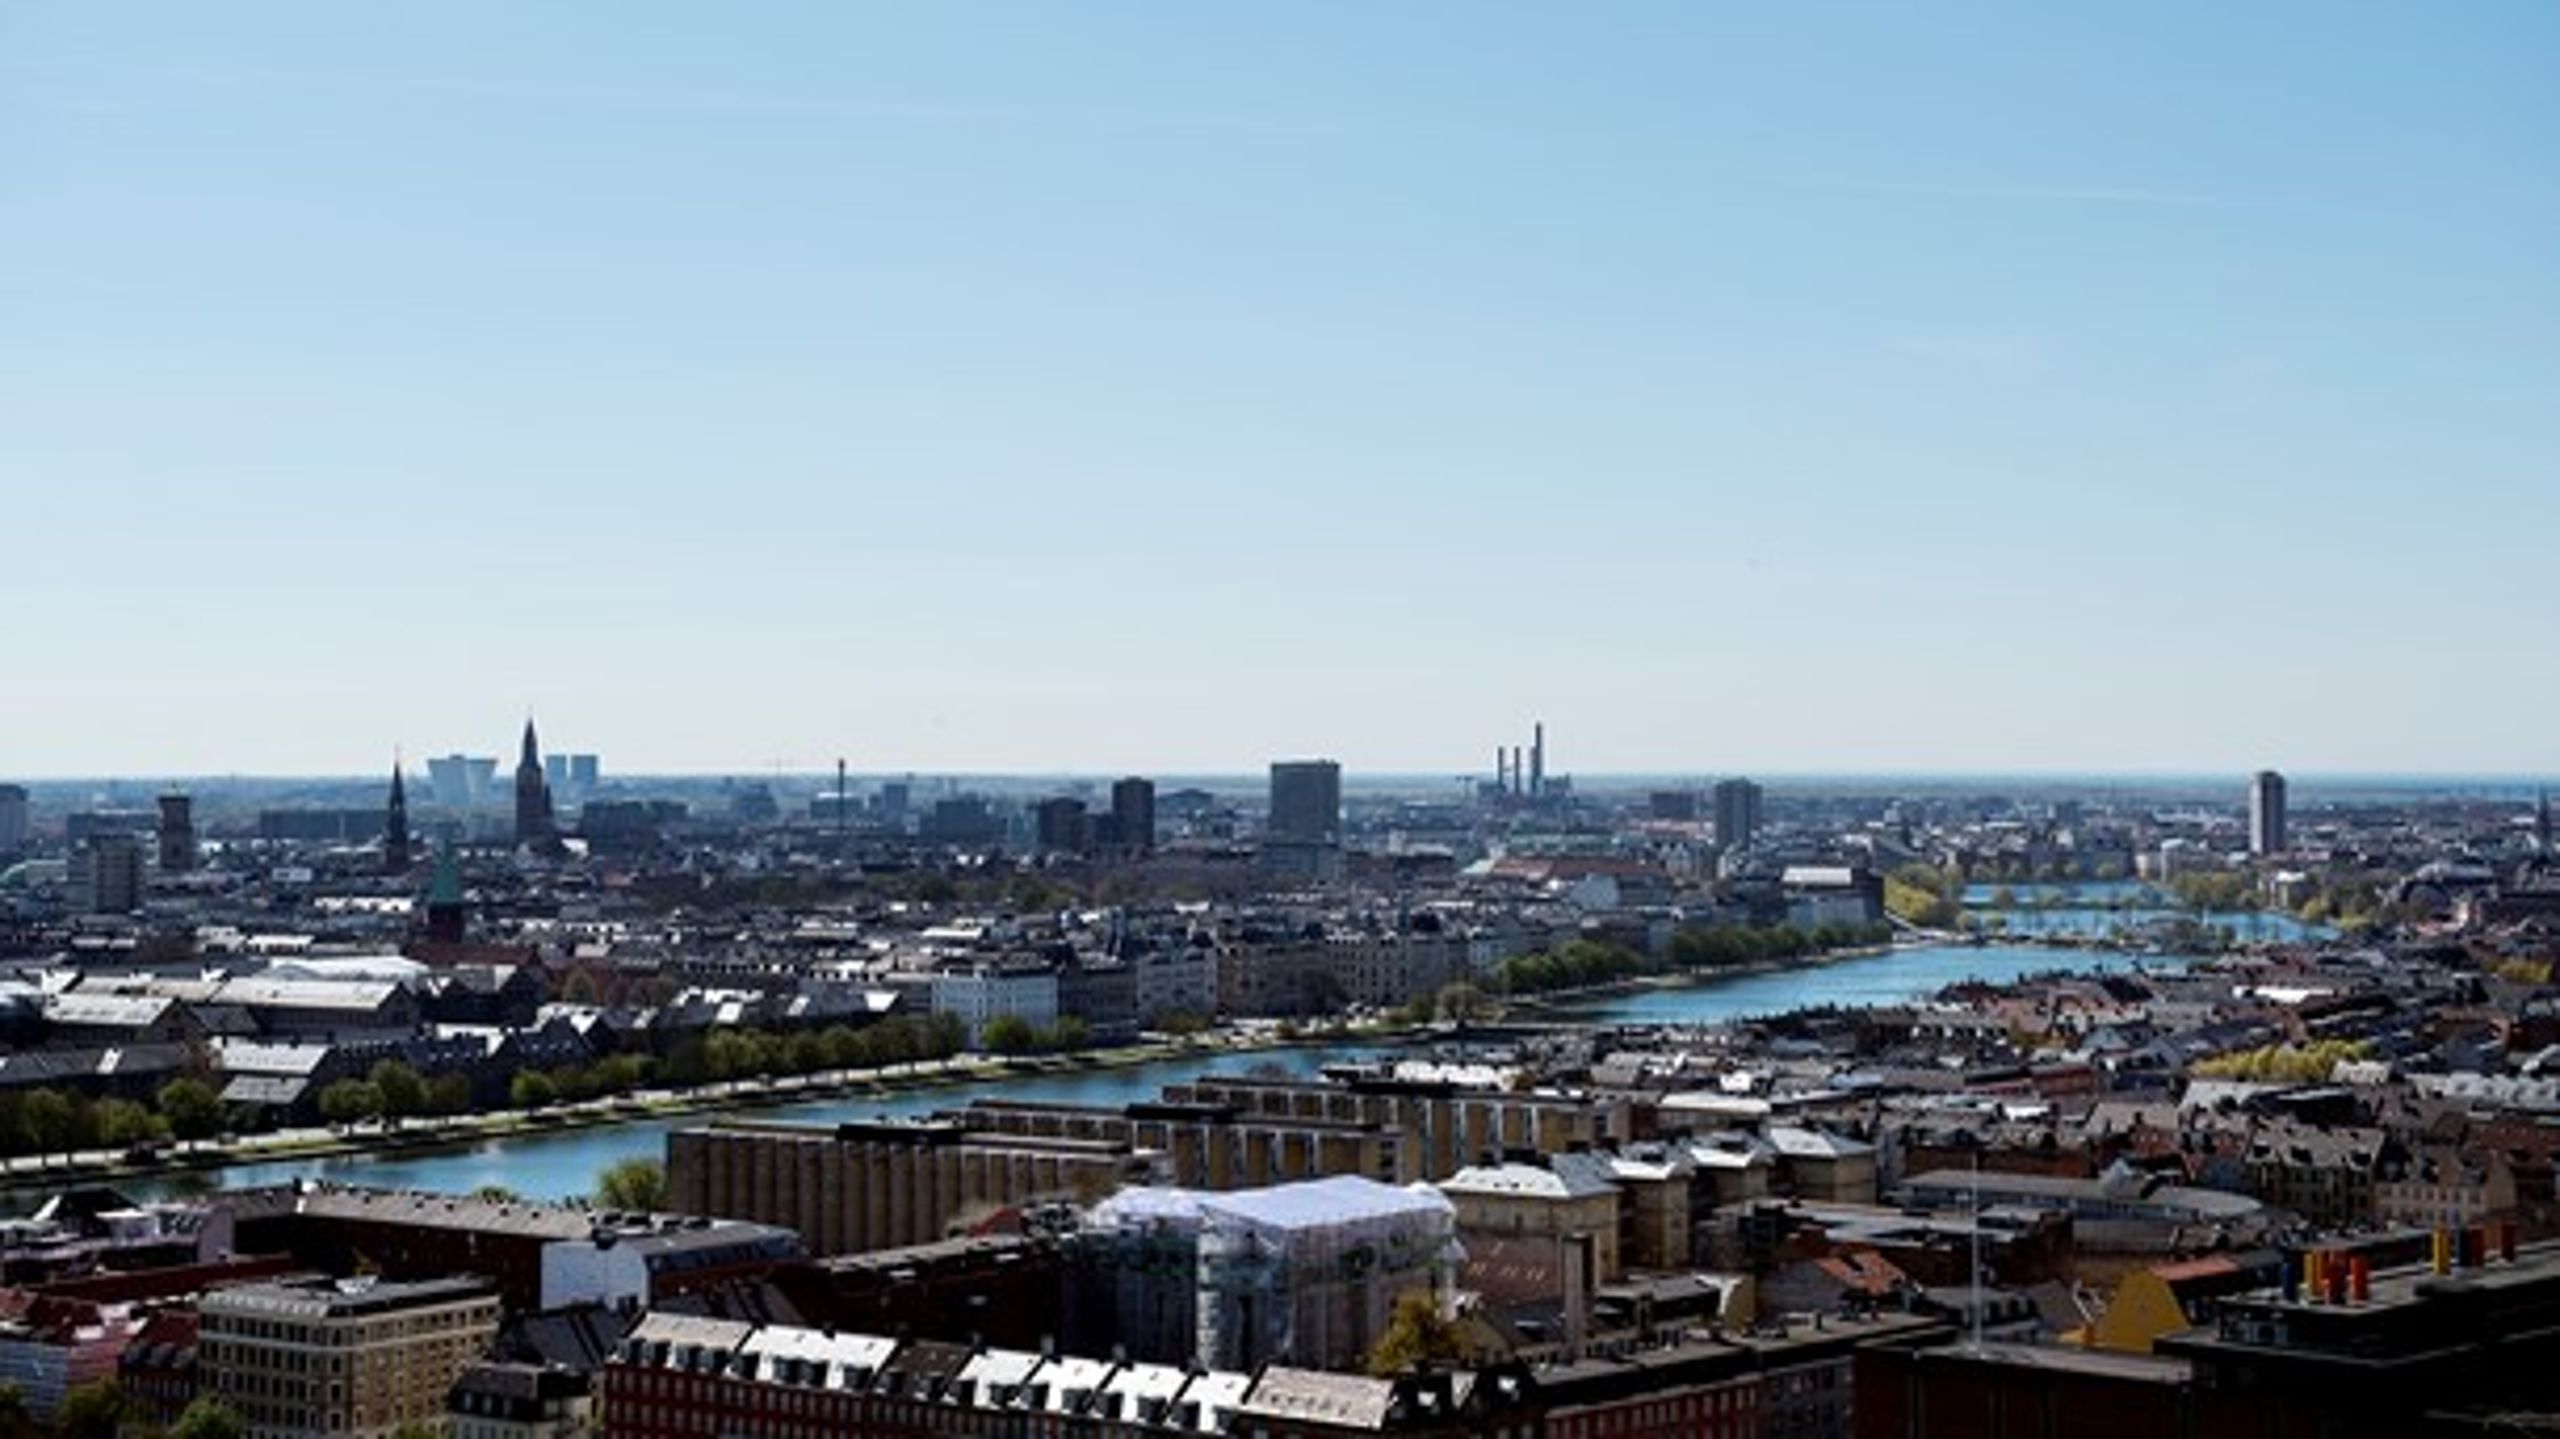 Seks københavnske borgmestre inviterer byens beboere til at udforme en fremtidsvision for hovedstaden.